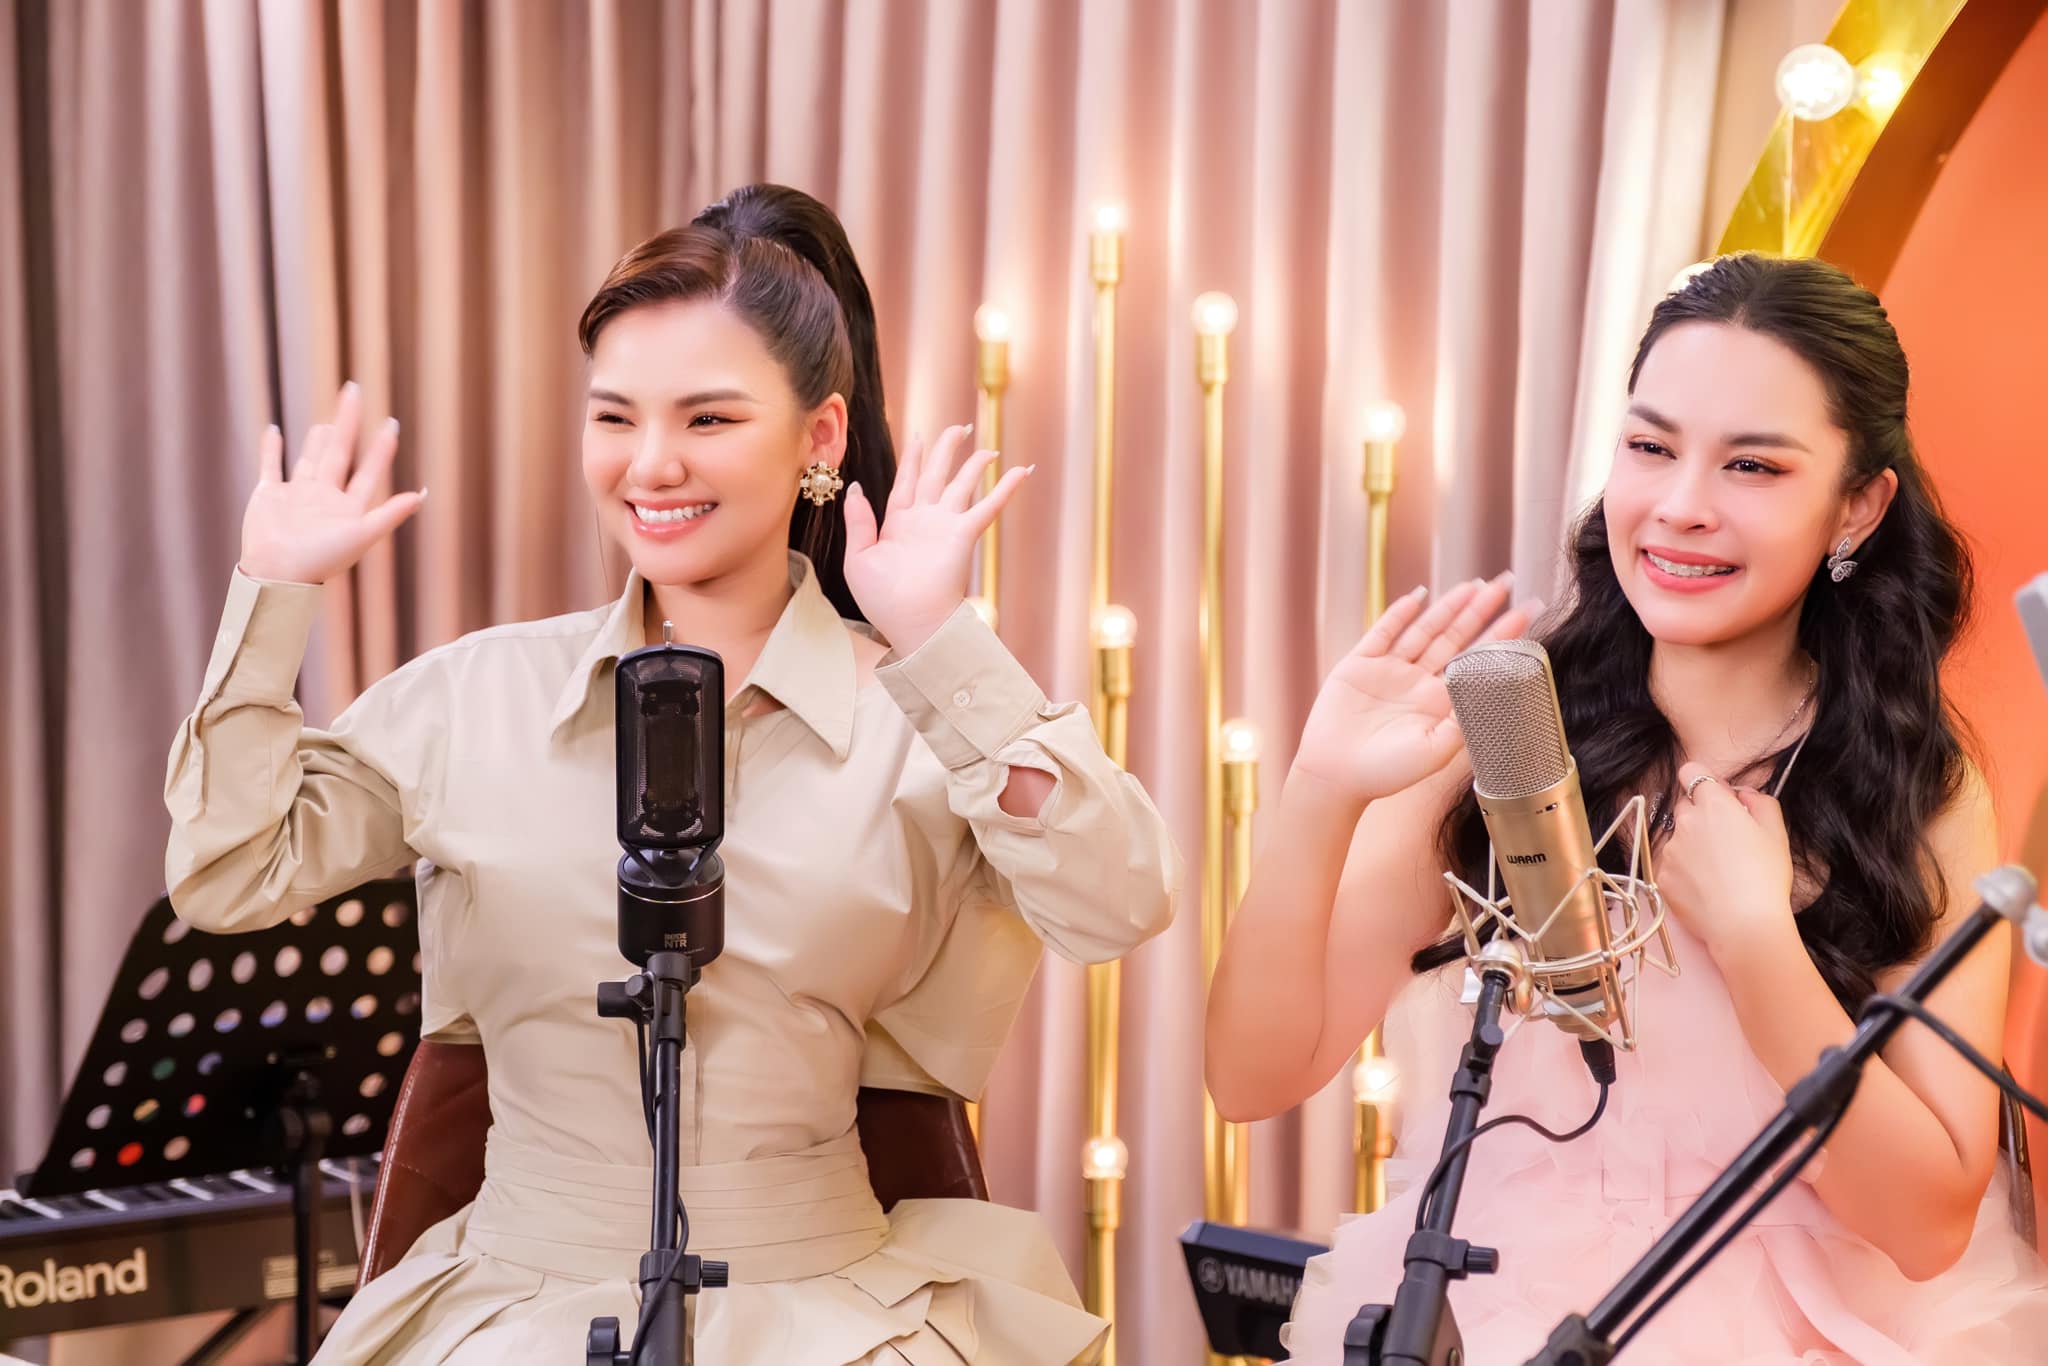 Nỗi sợ phía sau thành công của những ca sĩ 'có giọng' ở nhạc Việt: Trở thành 'thợ hát', 'máy hát' - 5